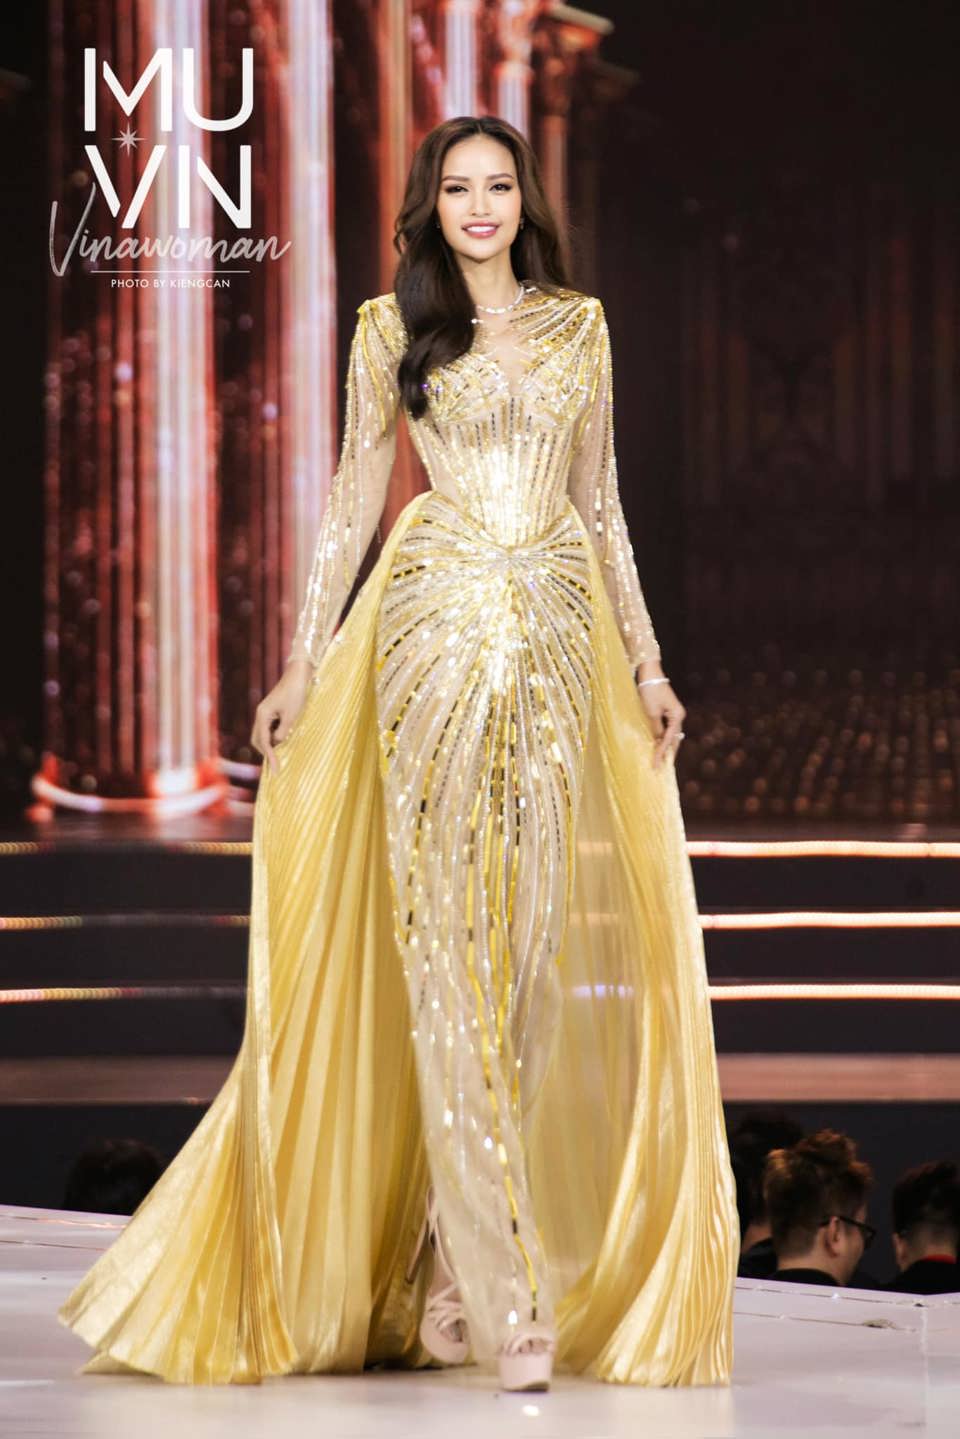 Chân dung Miss Universe Vietnam 2022 Nguyễn Thị Ngọc Châu - Ảnh 9